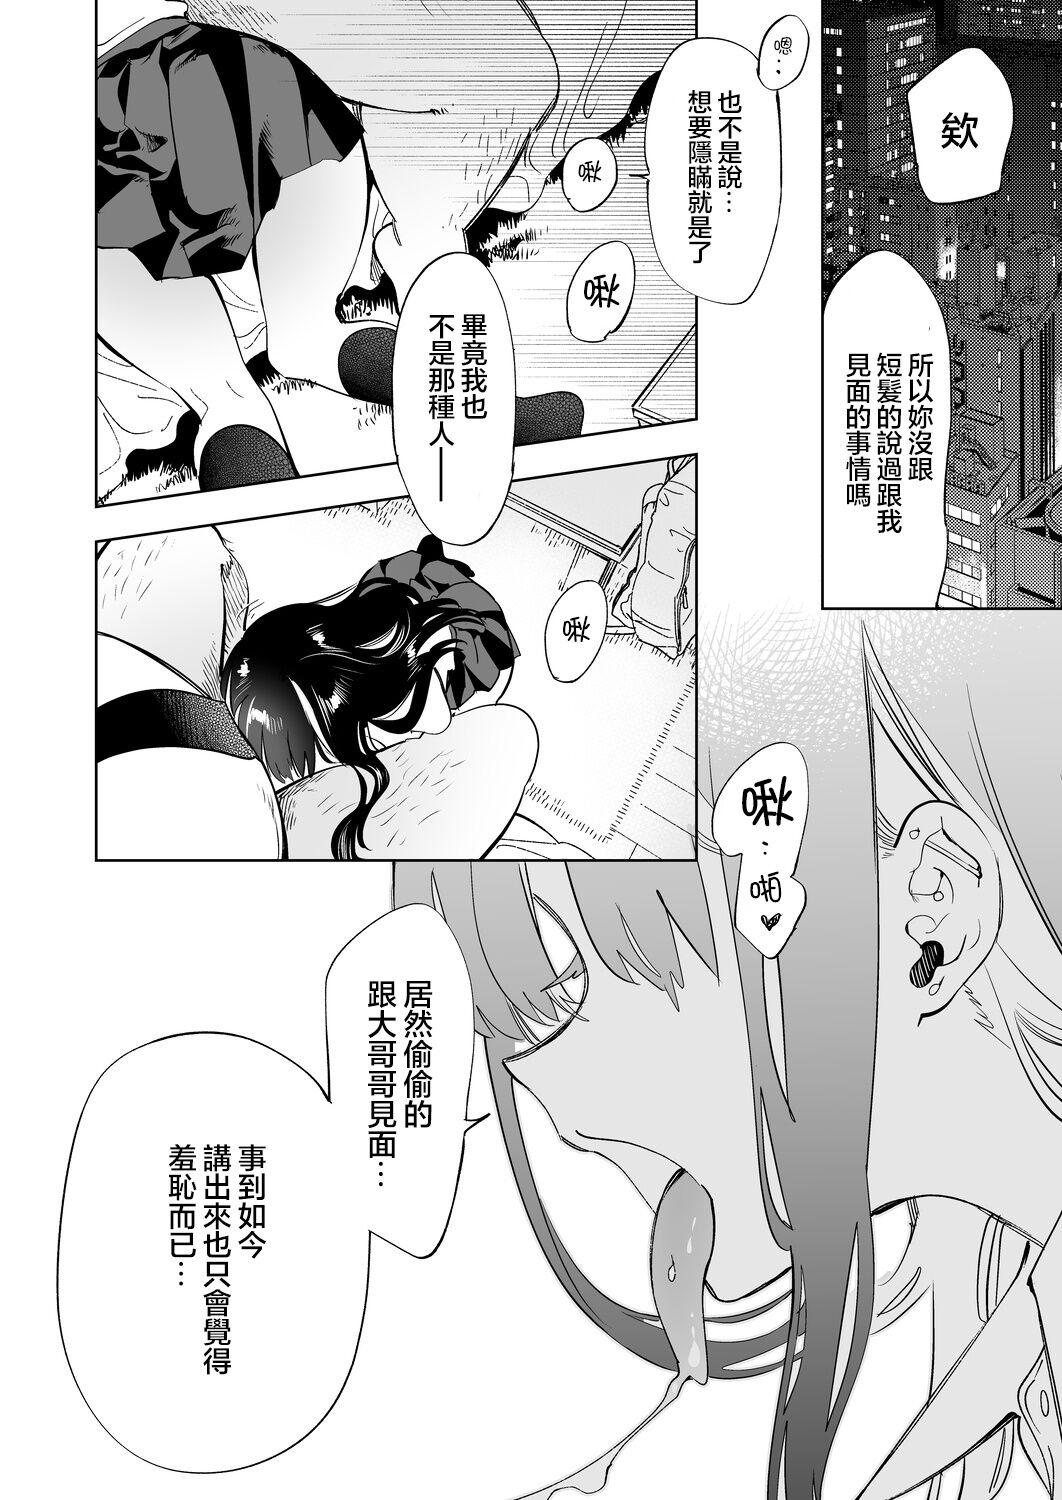 Lez Oni-san, watashitachi to ocha shimasen kaa? 2 - Original Nurugel - Page 5